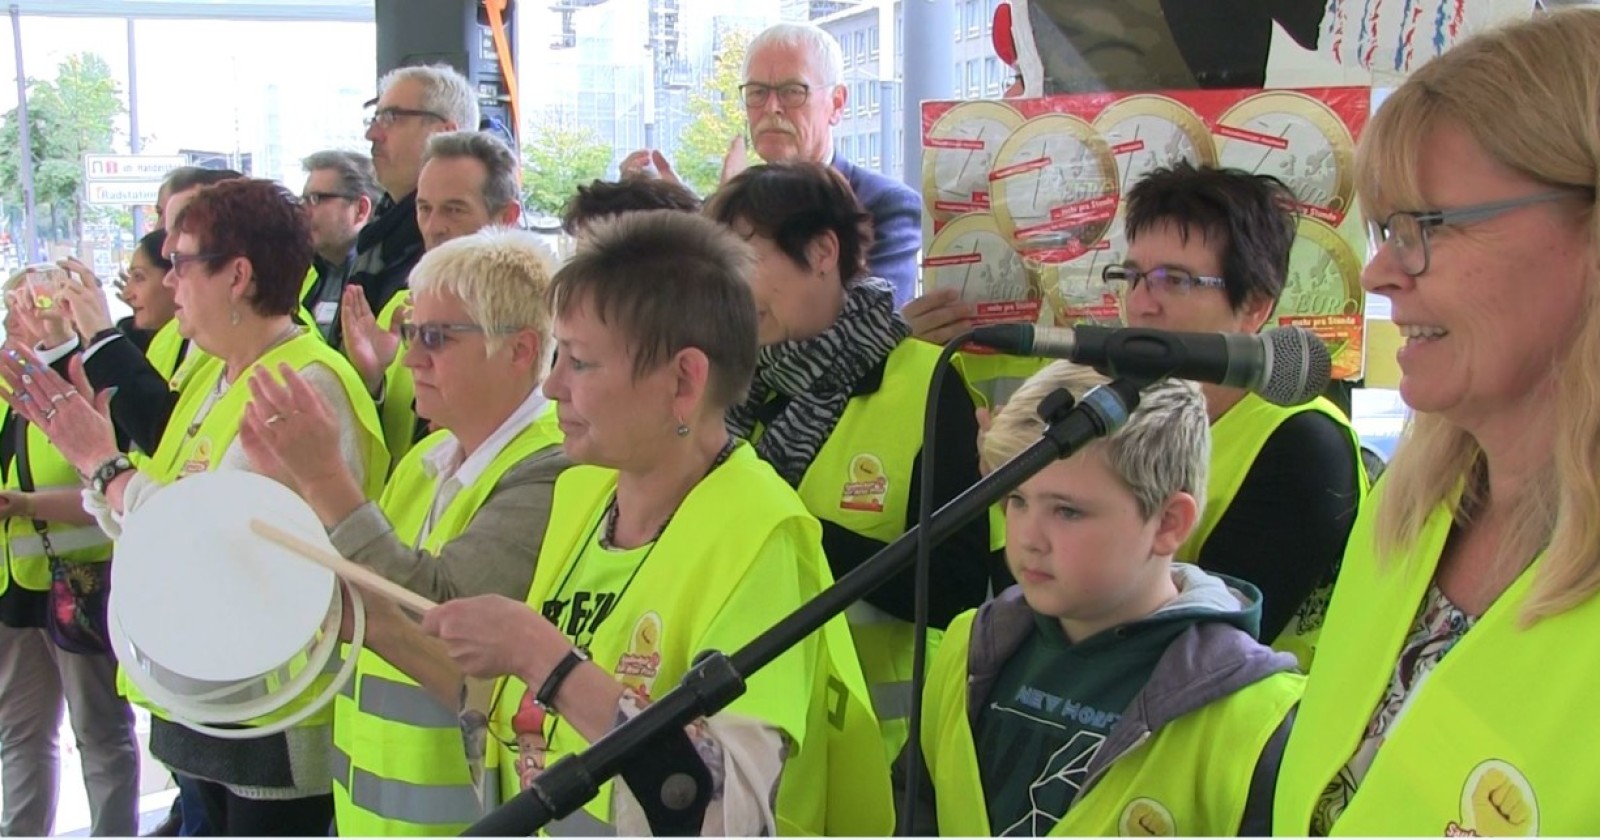 Video: Kundgebung in Essen - Ulrike Laux: "Es ist Zeit für Umverteilung"